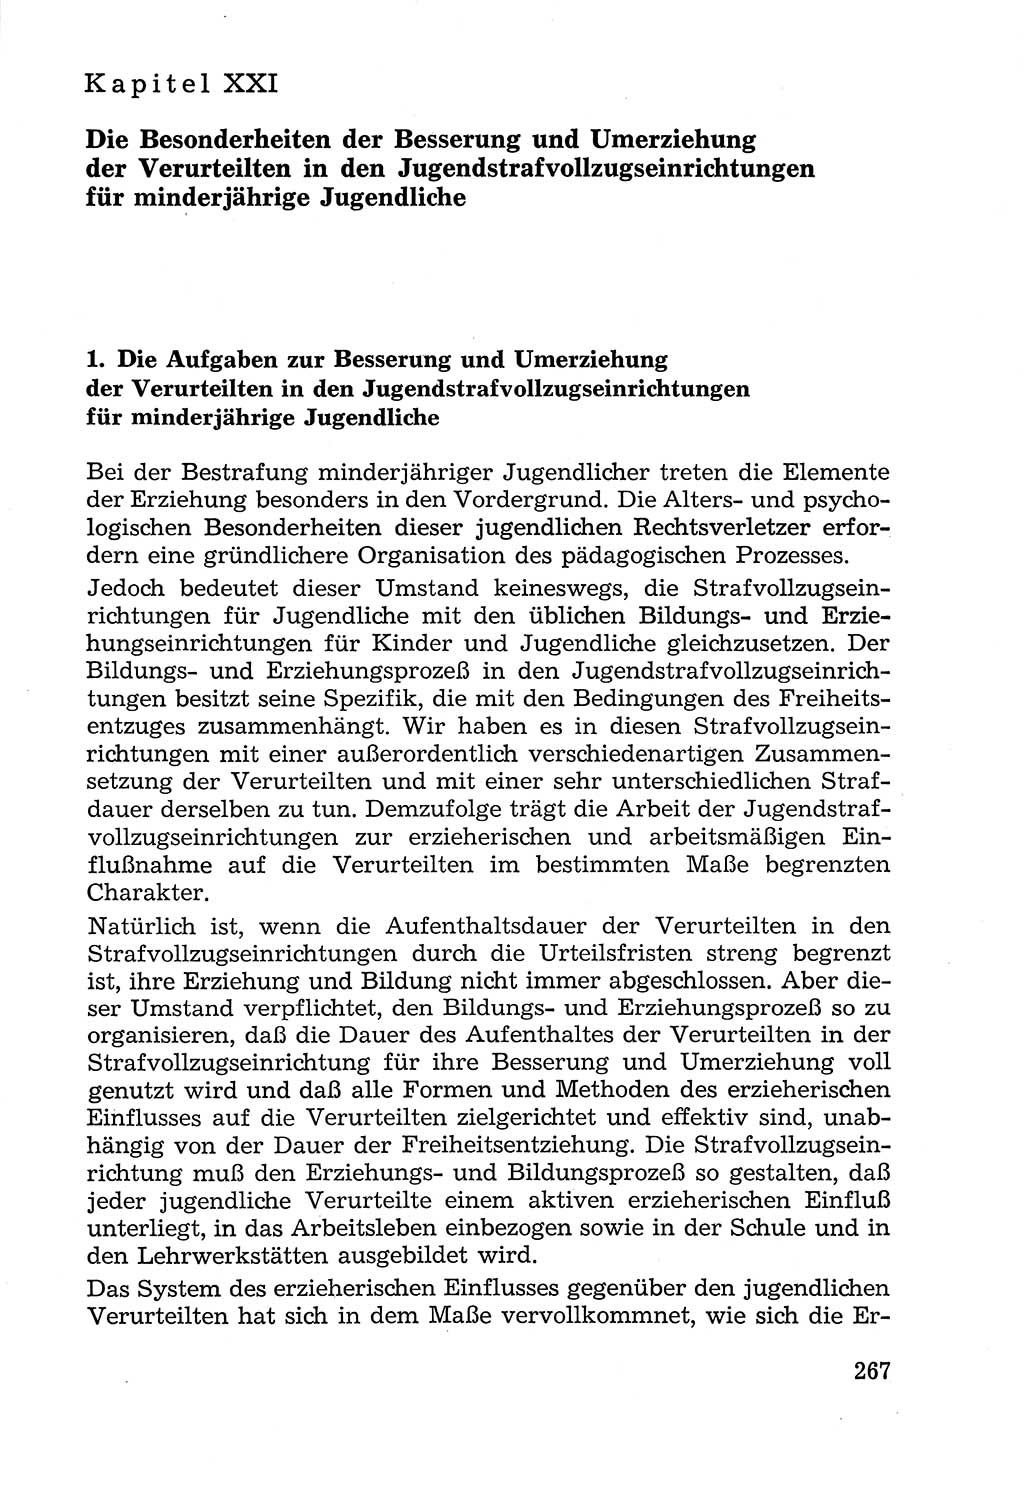 Lehrbuch der Strafvollzugspädagogik [Deutsche Demokratische Republik (DDR)] 1969, Seite 267 (Lb. SV-Pd. DDR 1969, S. 267)